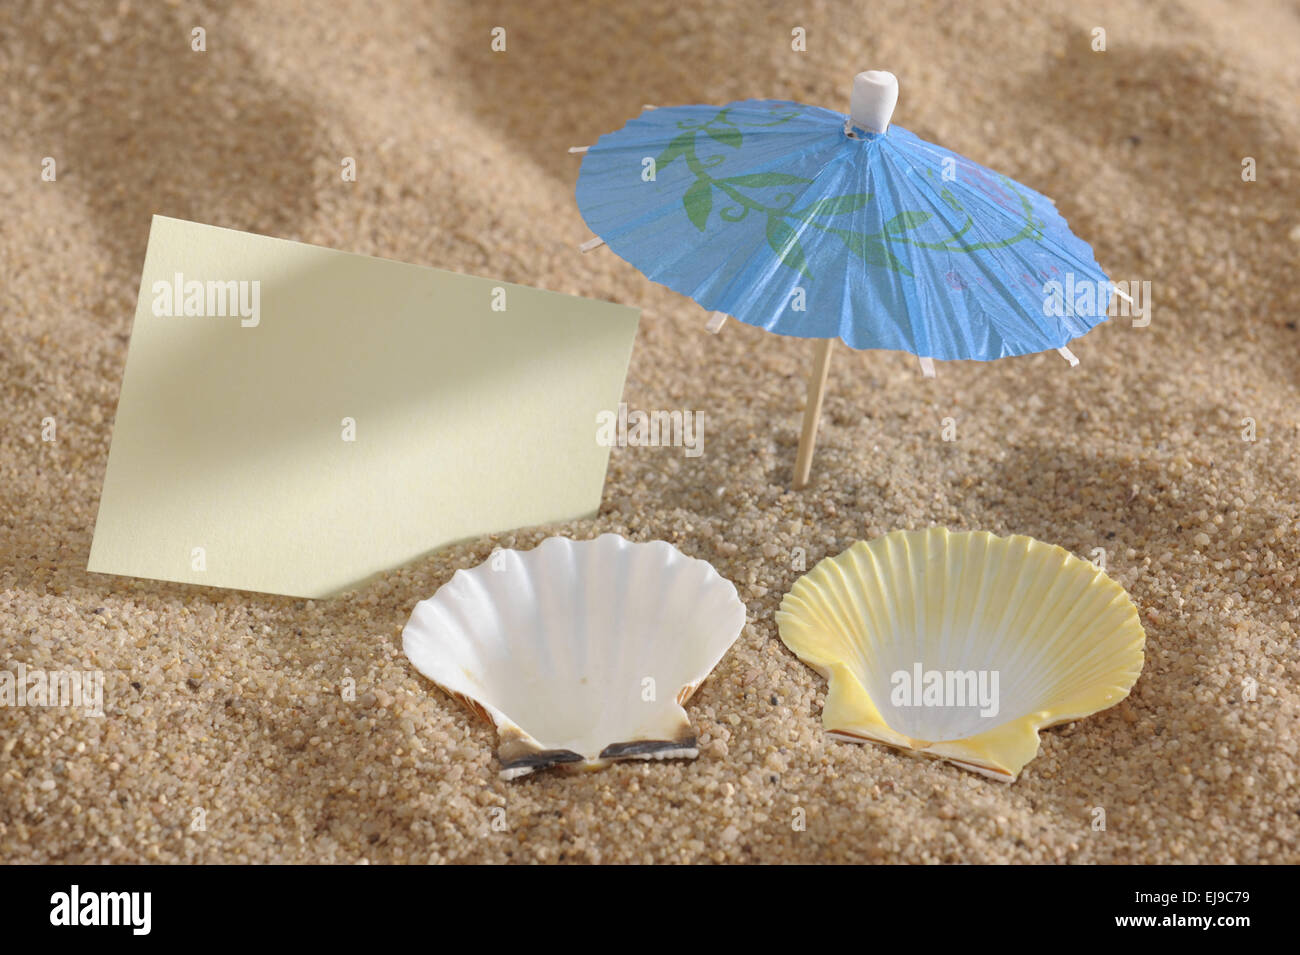 Gusci come lettini in spiaggia con avviso Foto Stock